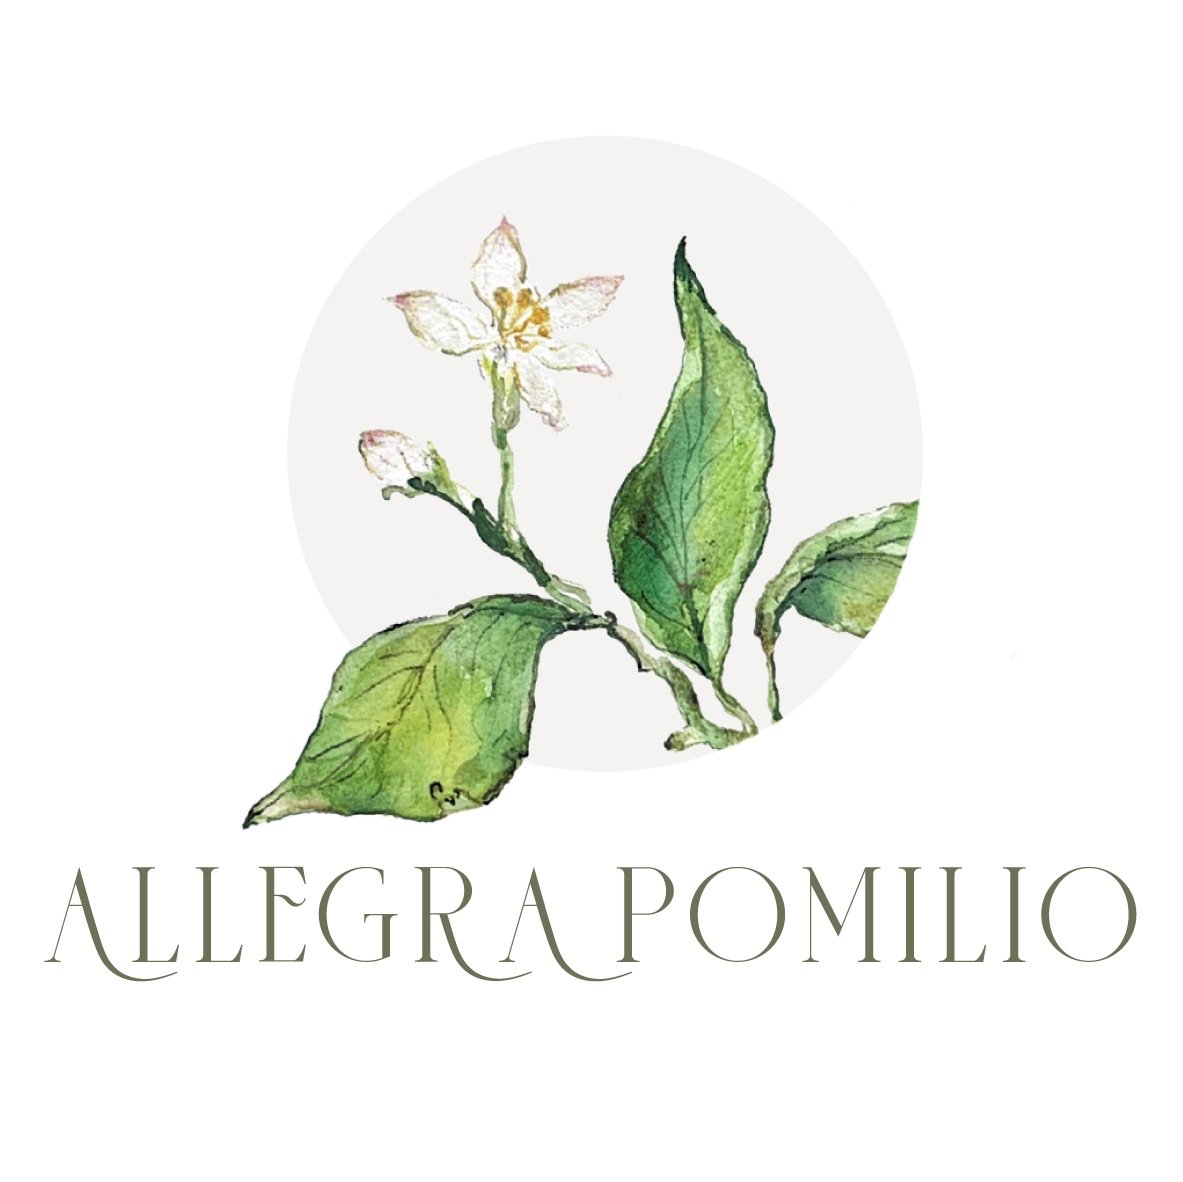 Allegra Pomilio